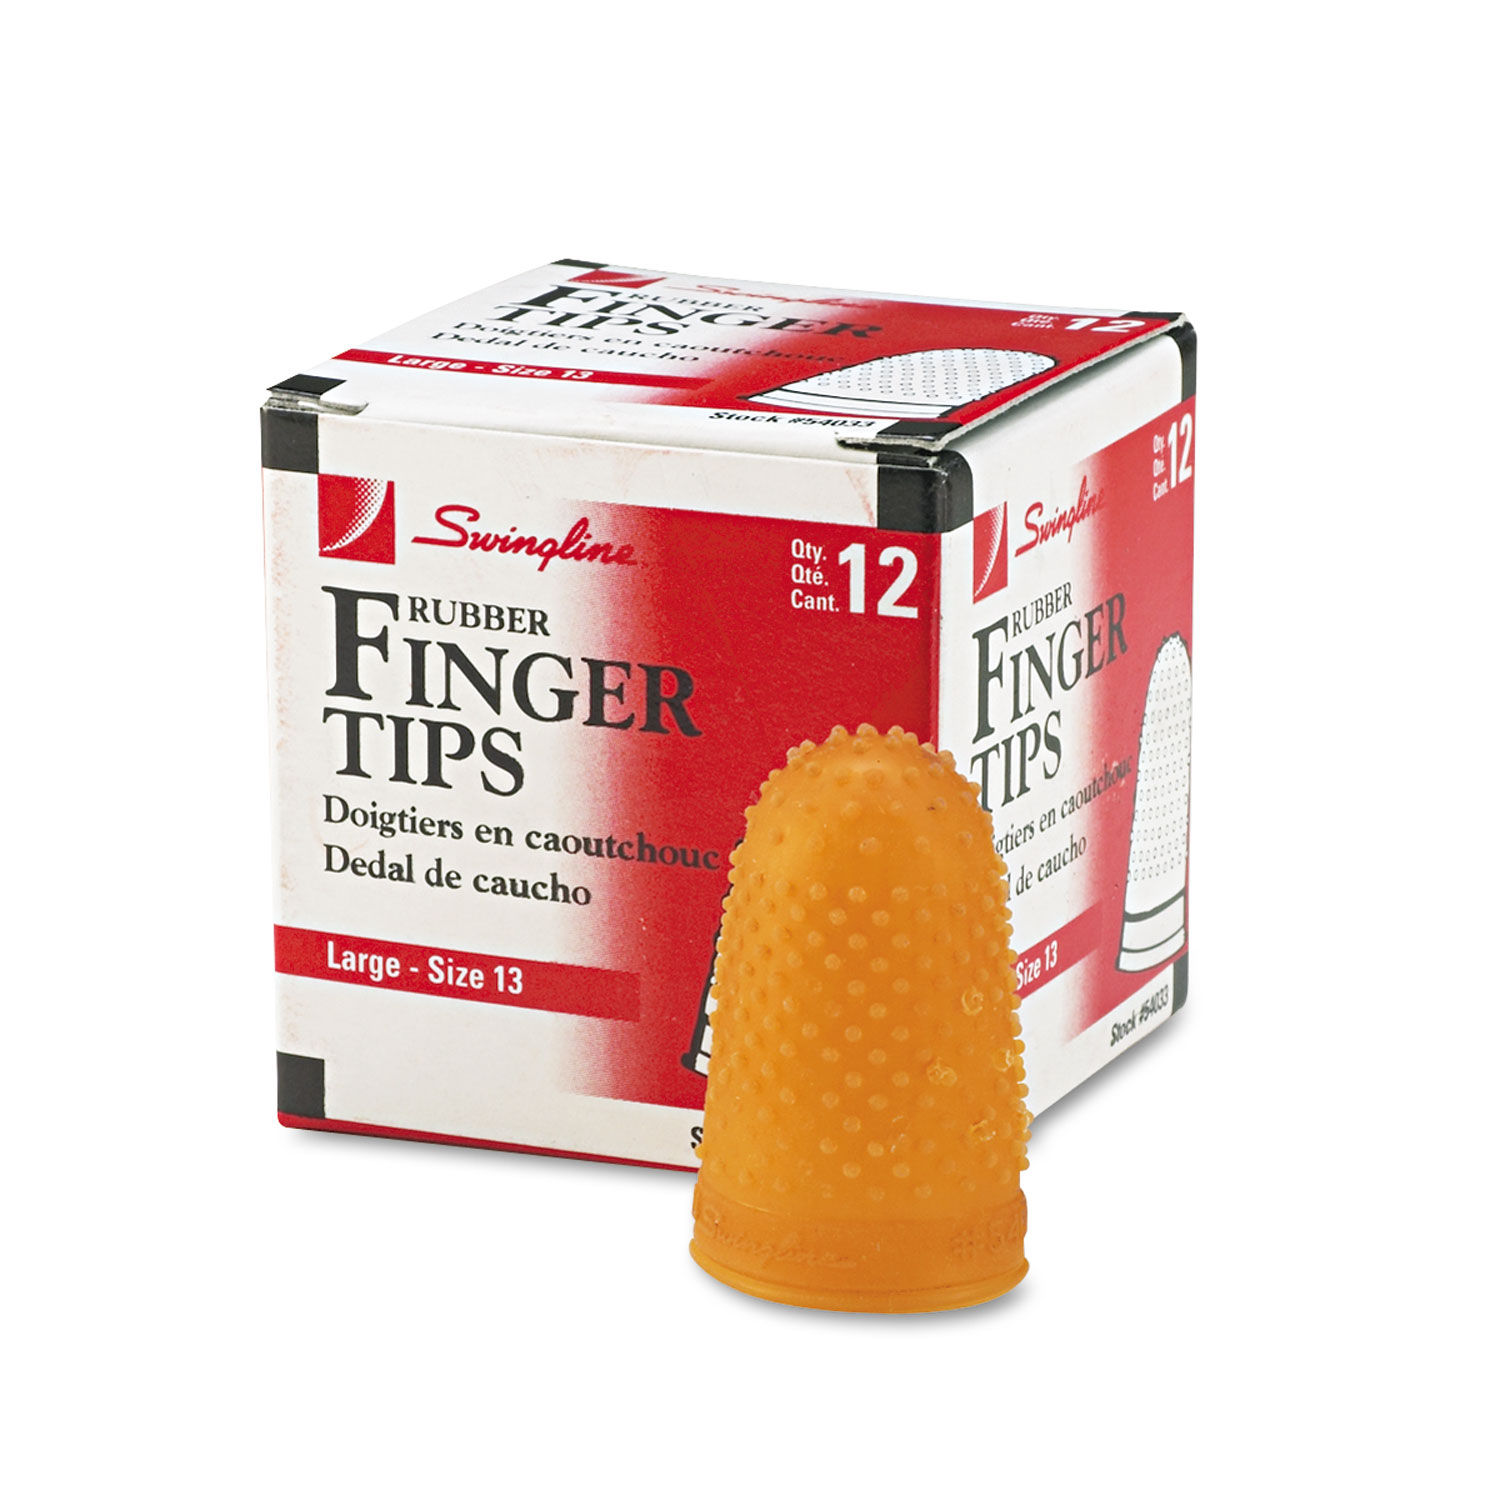 Rubber Finger Tips by Swinglineandreg; SWI54033